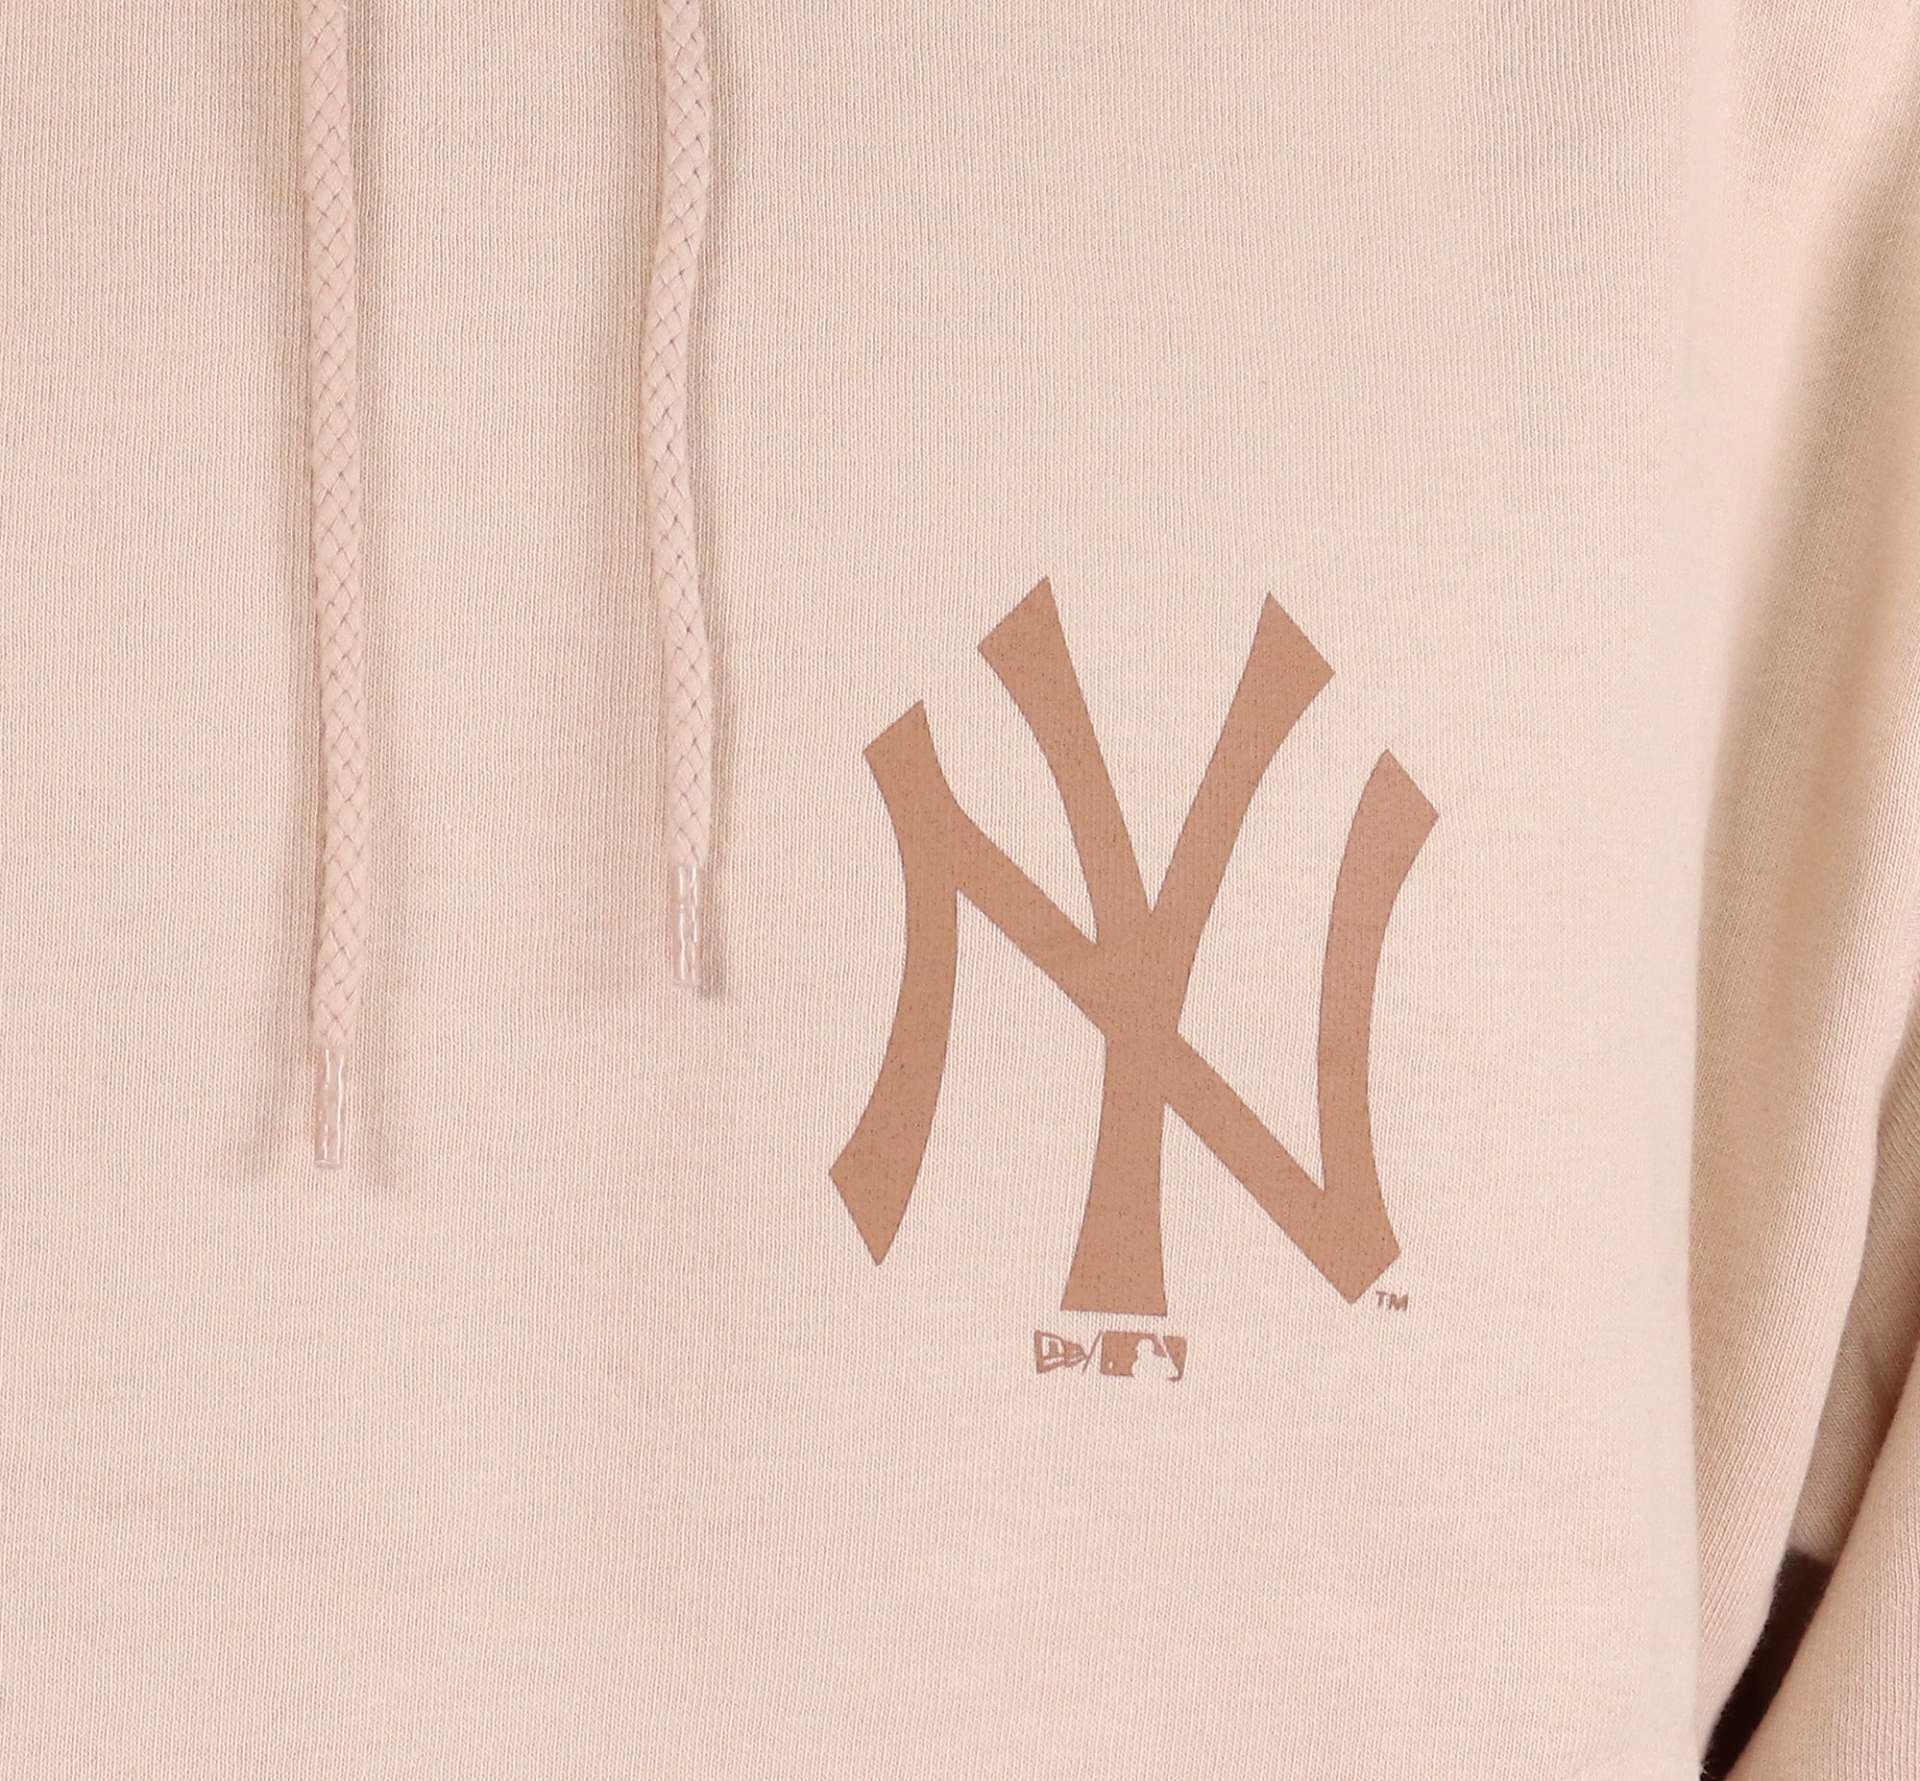 New York Yankees Putty Pink MLB Seasonal Infill Logo Oversized Hoody New Era